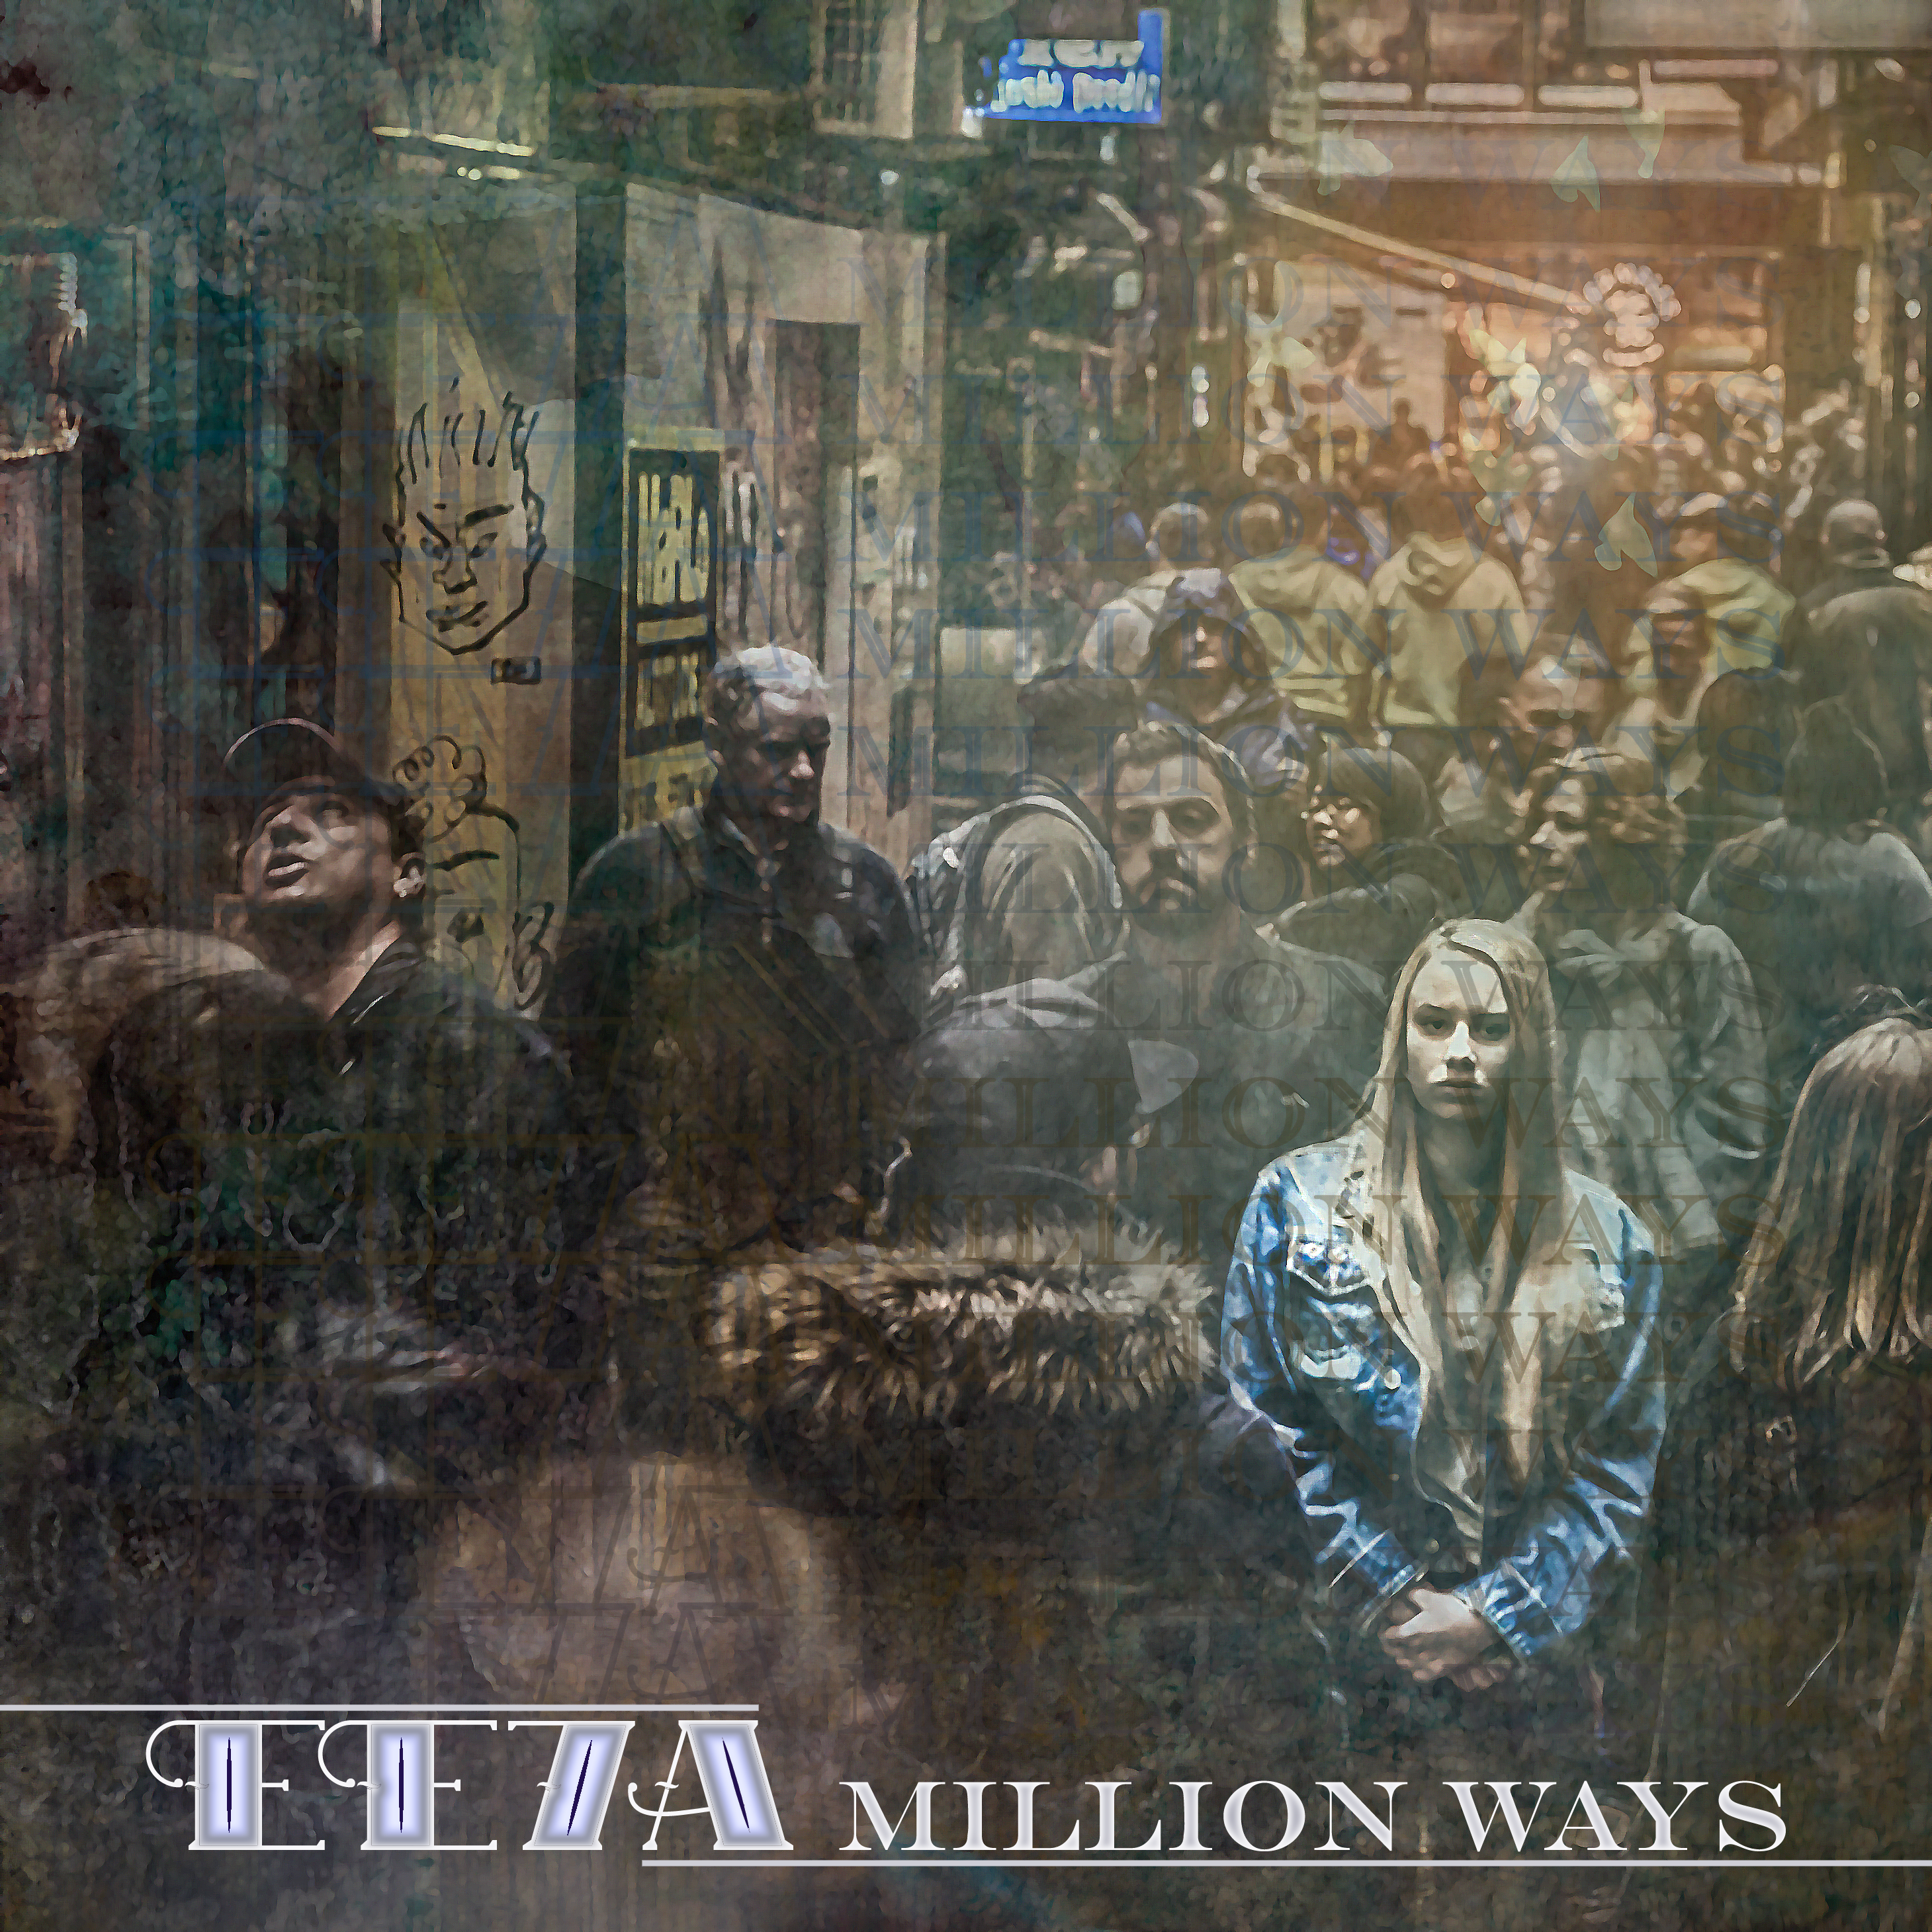 EE7A – A Million Ways